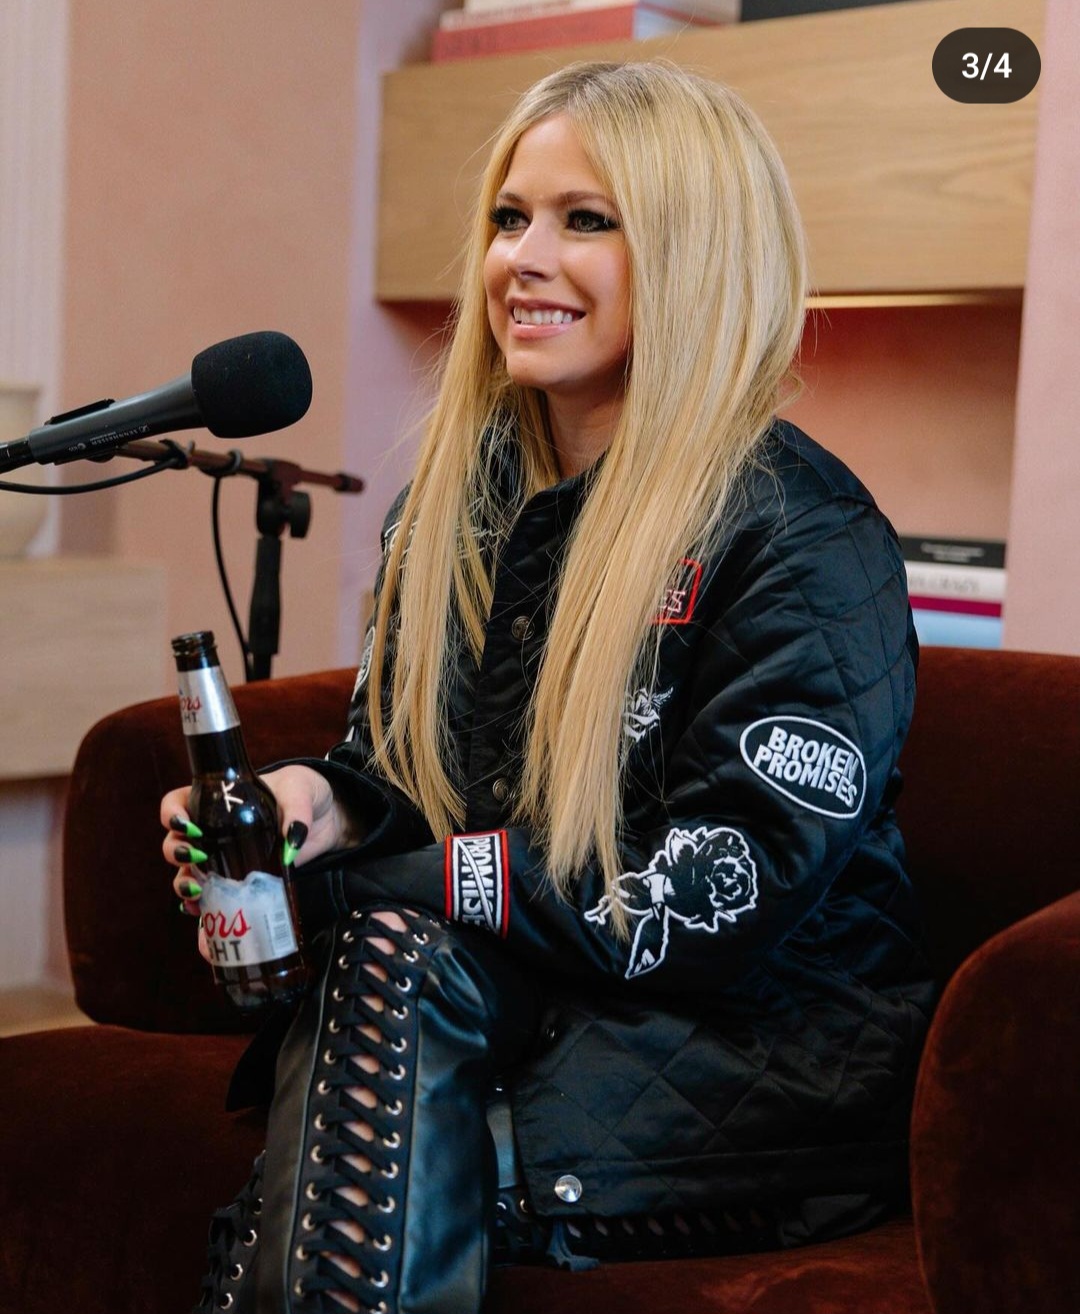 Avril Lavigne Benarkah Sudah Meninggal? Ini Jawaban Konspirasinya